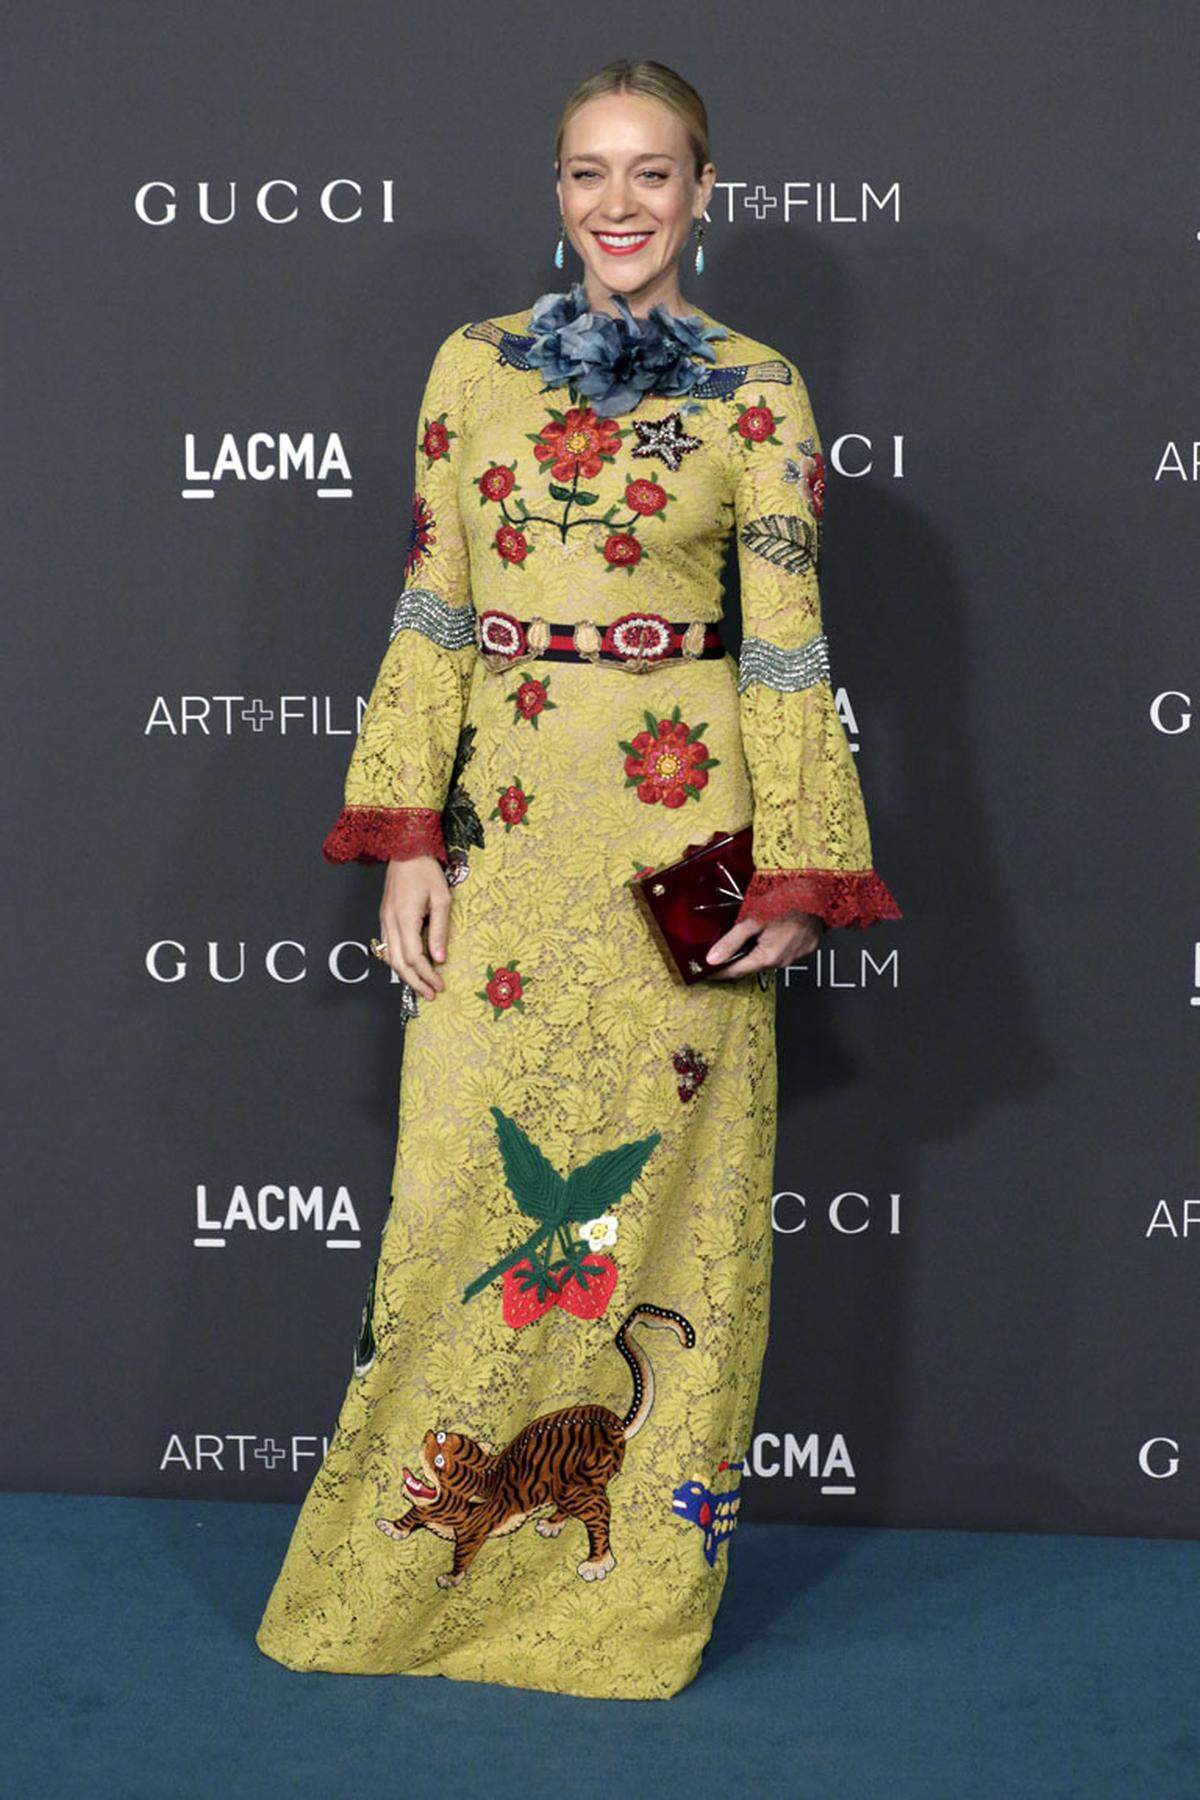 Etwas gewöhnungsbedürftig sah hingegen das Gucci-Kleid von Chloe Sevigny aus.